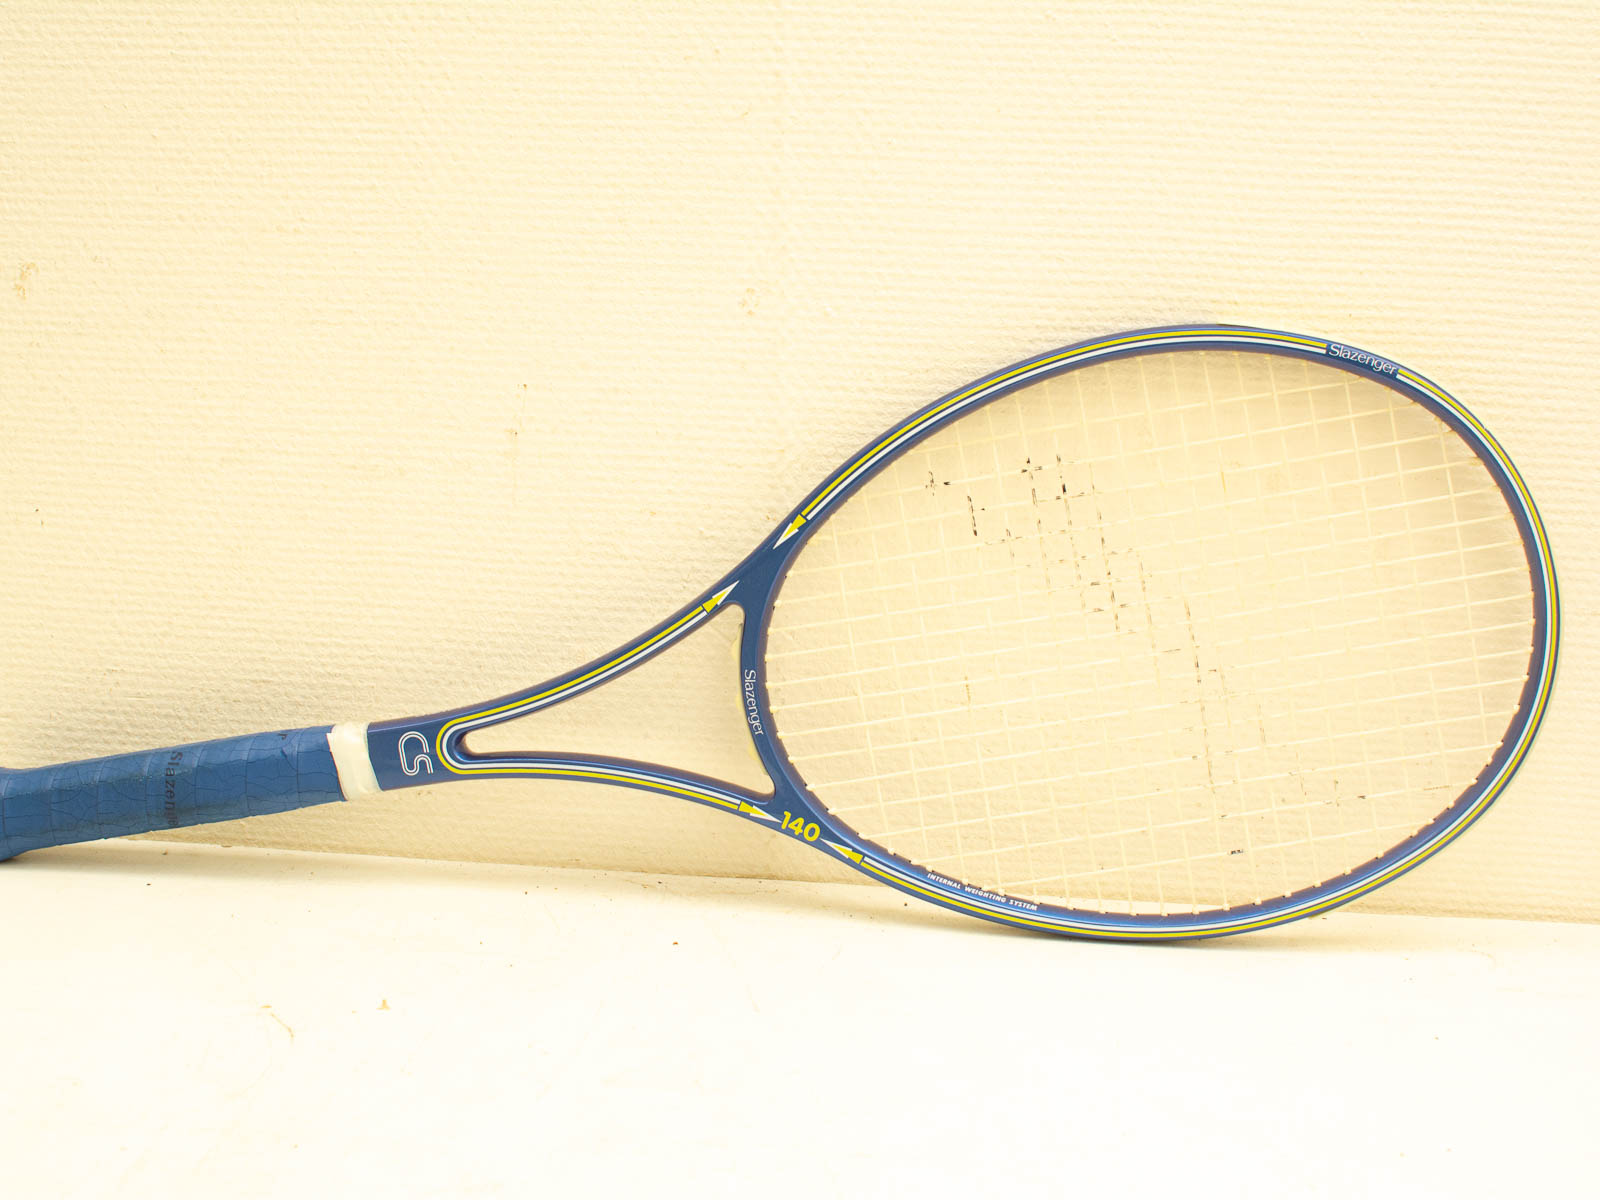 slazenger cs 140 tennis racket  32322